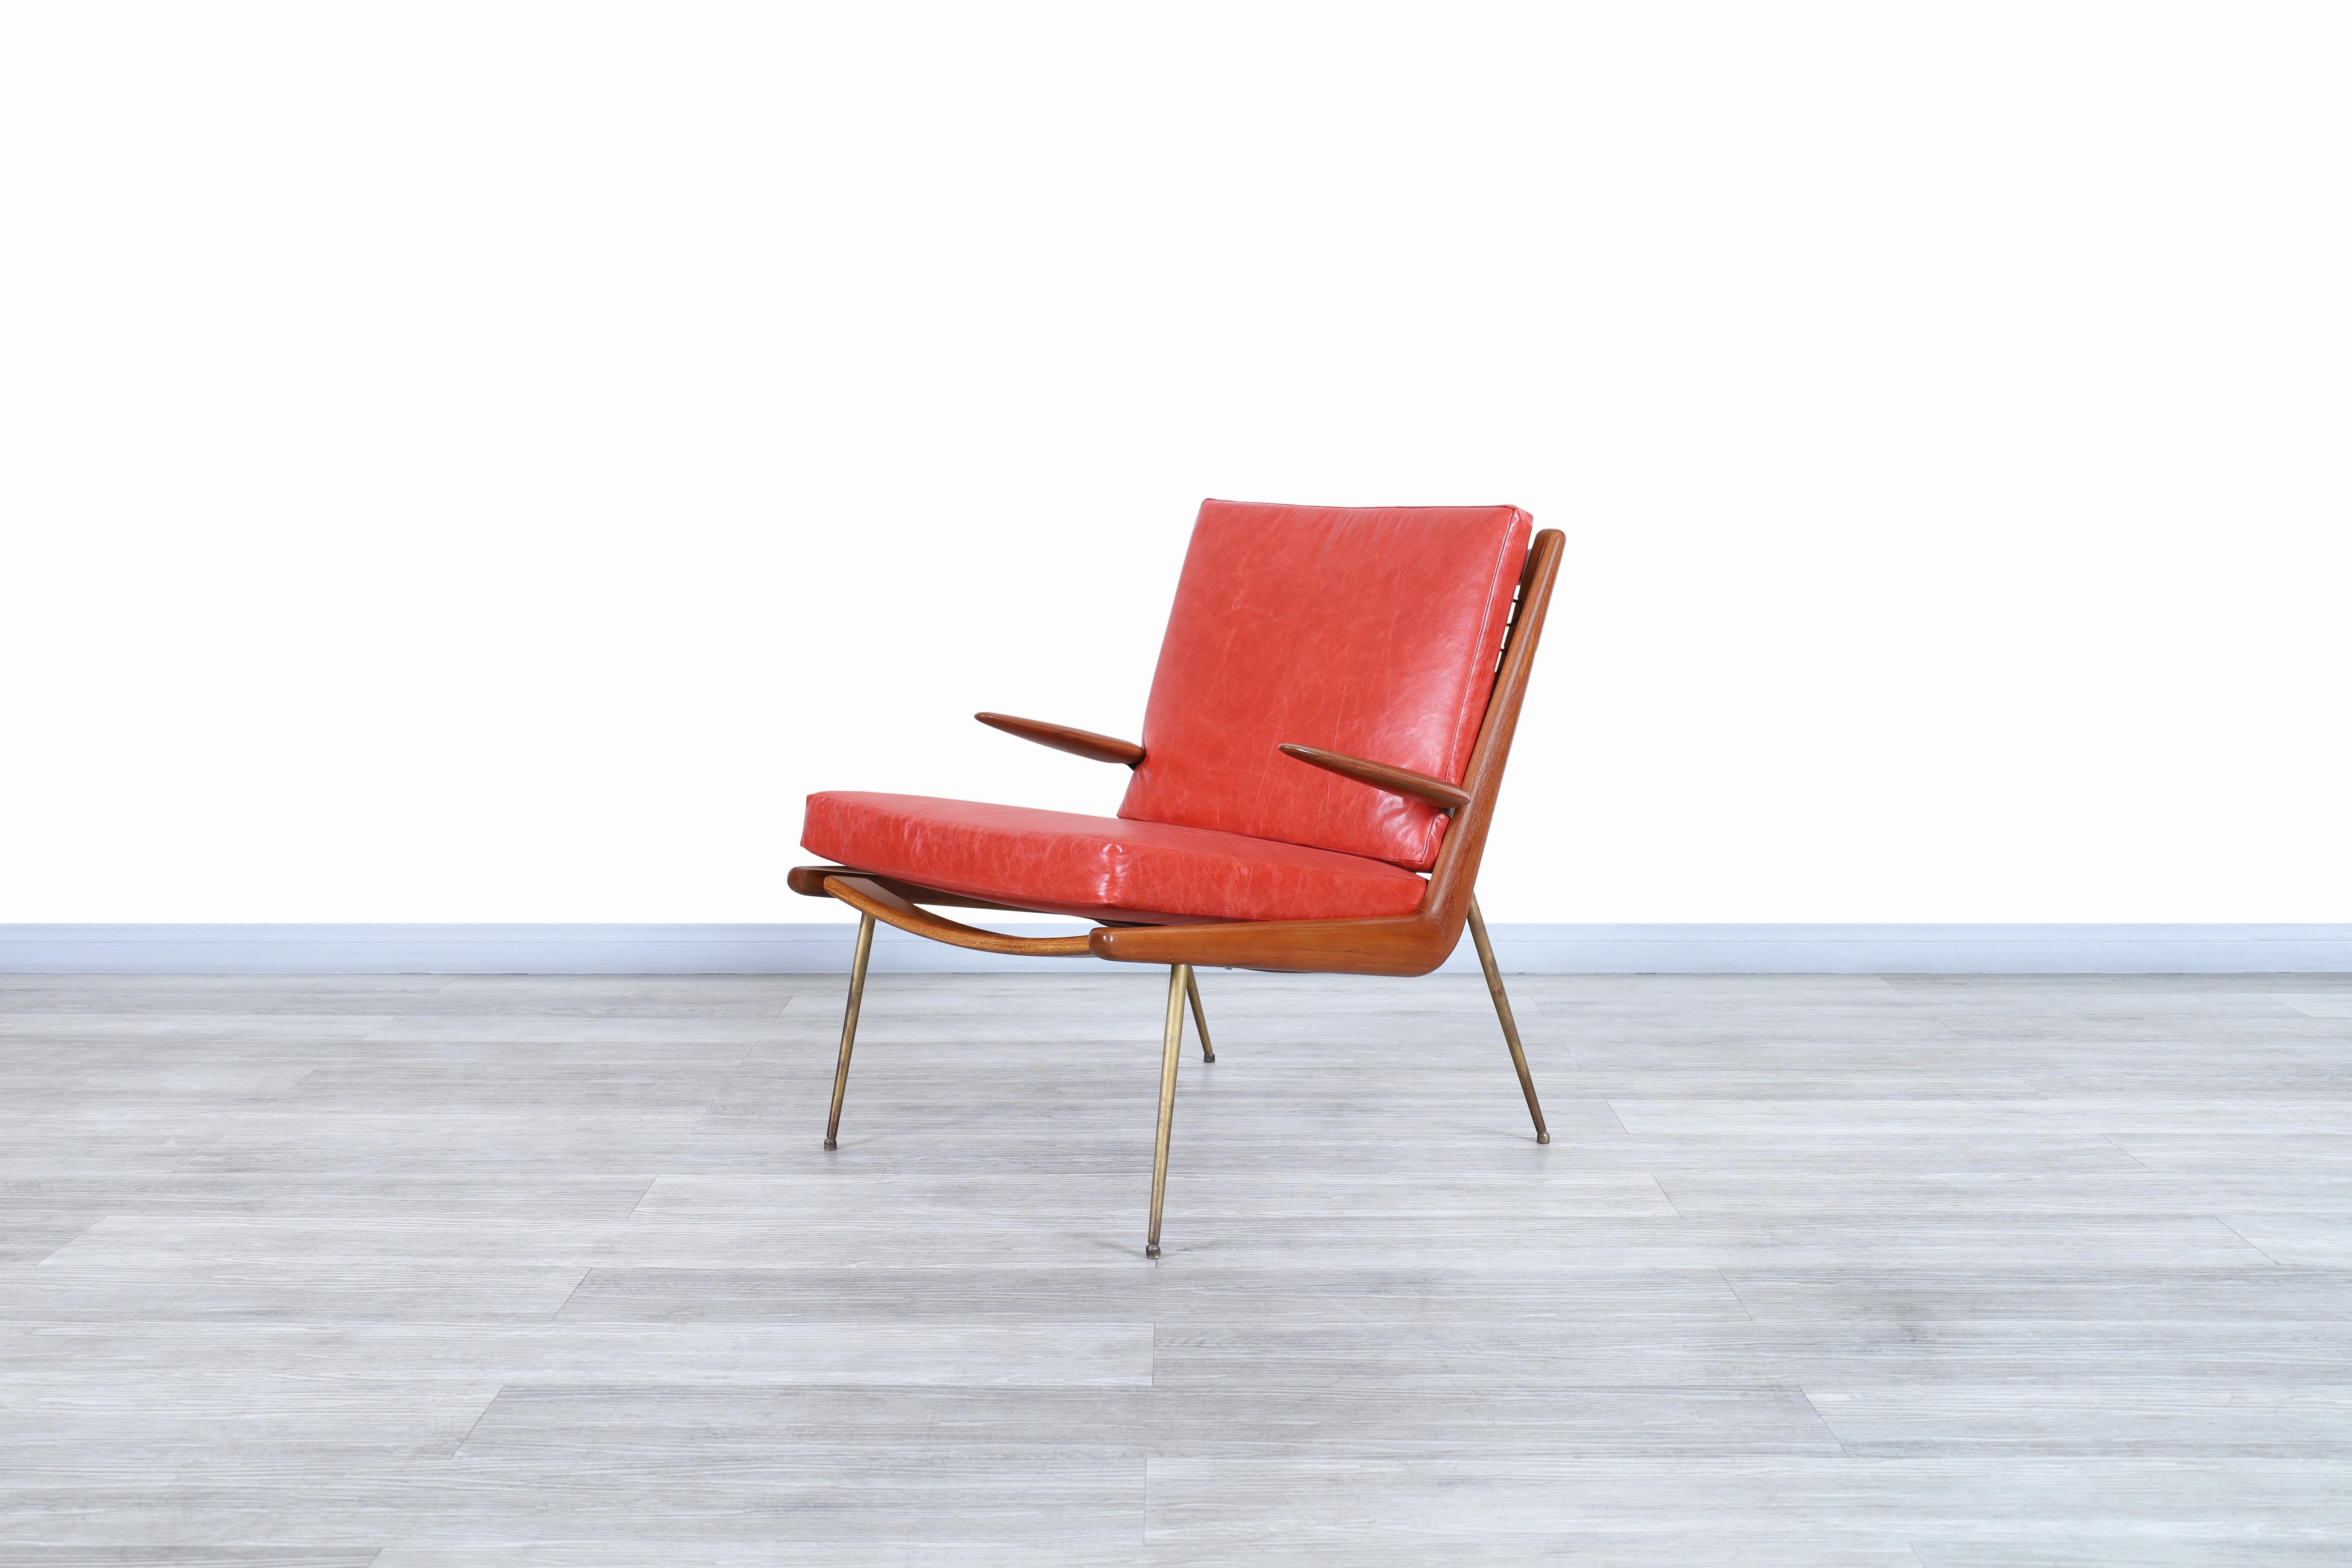 Merveilleuse chaise longue Boomerang moderne danoise conçue par Peter Hvid et Orla Molgaard-Nielsen pour France & Daverkosen au Danemark, vers les années 1950. Cette chaise a été identifiée comme le modèle FD-135, en raison des matériaux utilisés